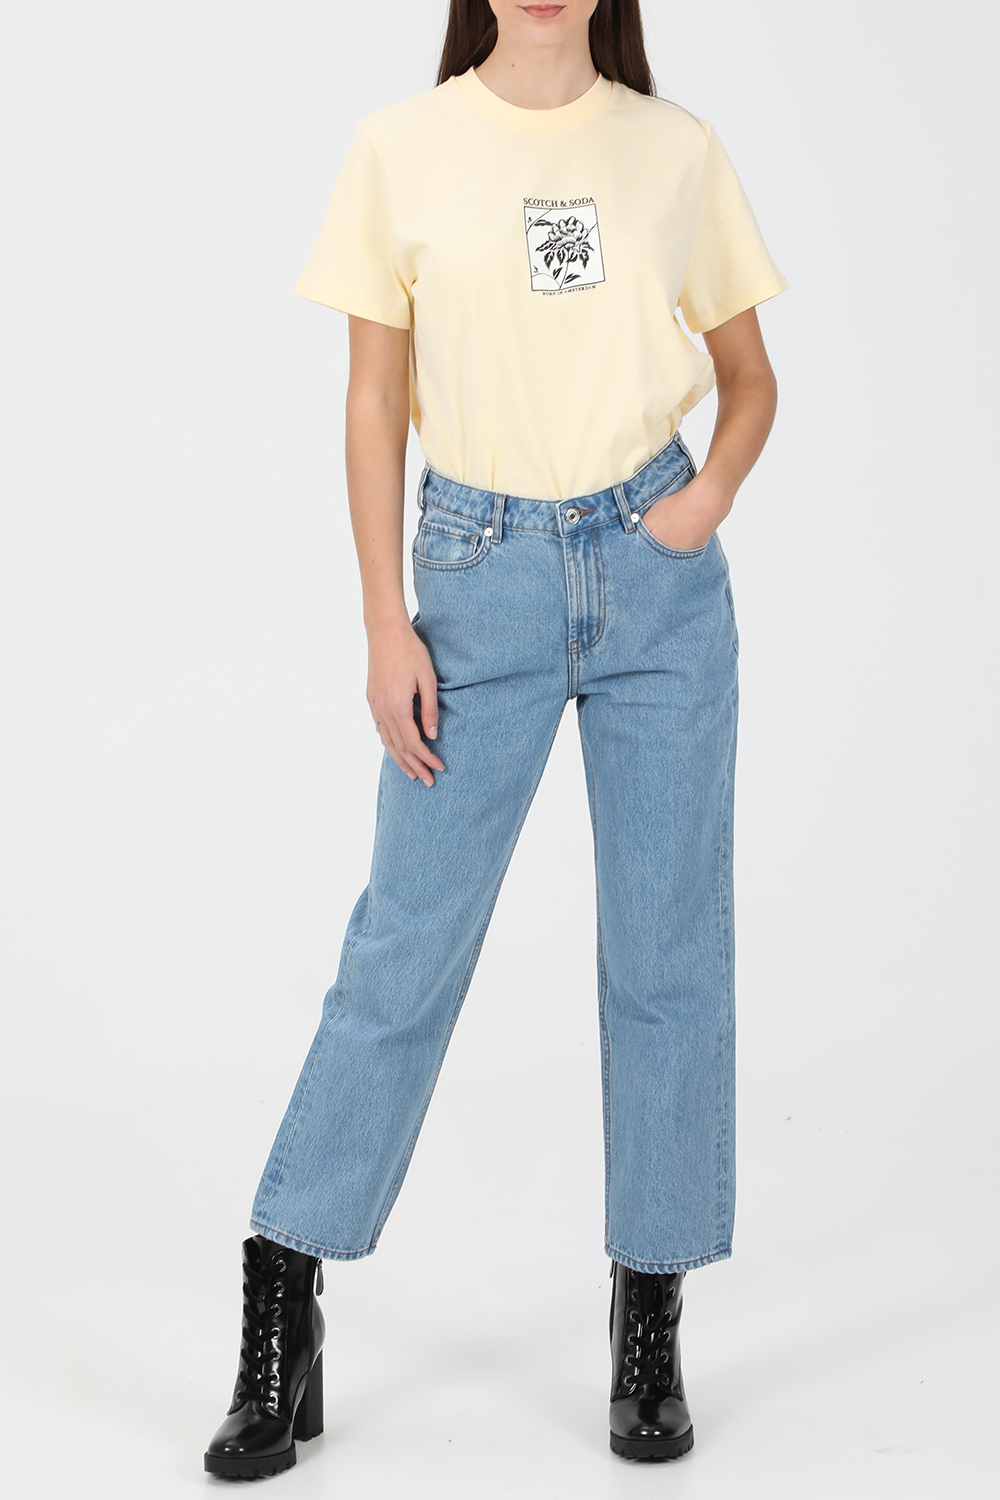 SCOTCH & SODA – Γυναικείο jean παντελόνι SCOTCH & SODA High Rise Tailored Straight Le μπλε 1821068.0-0013